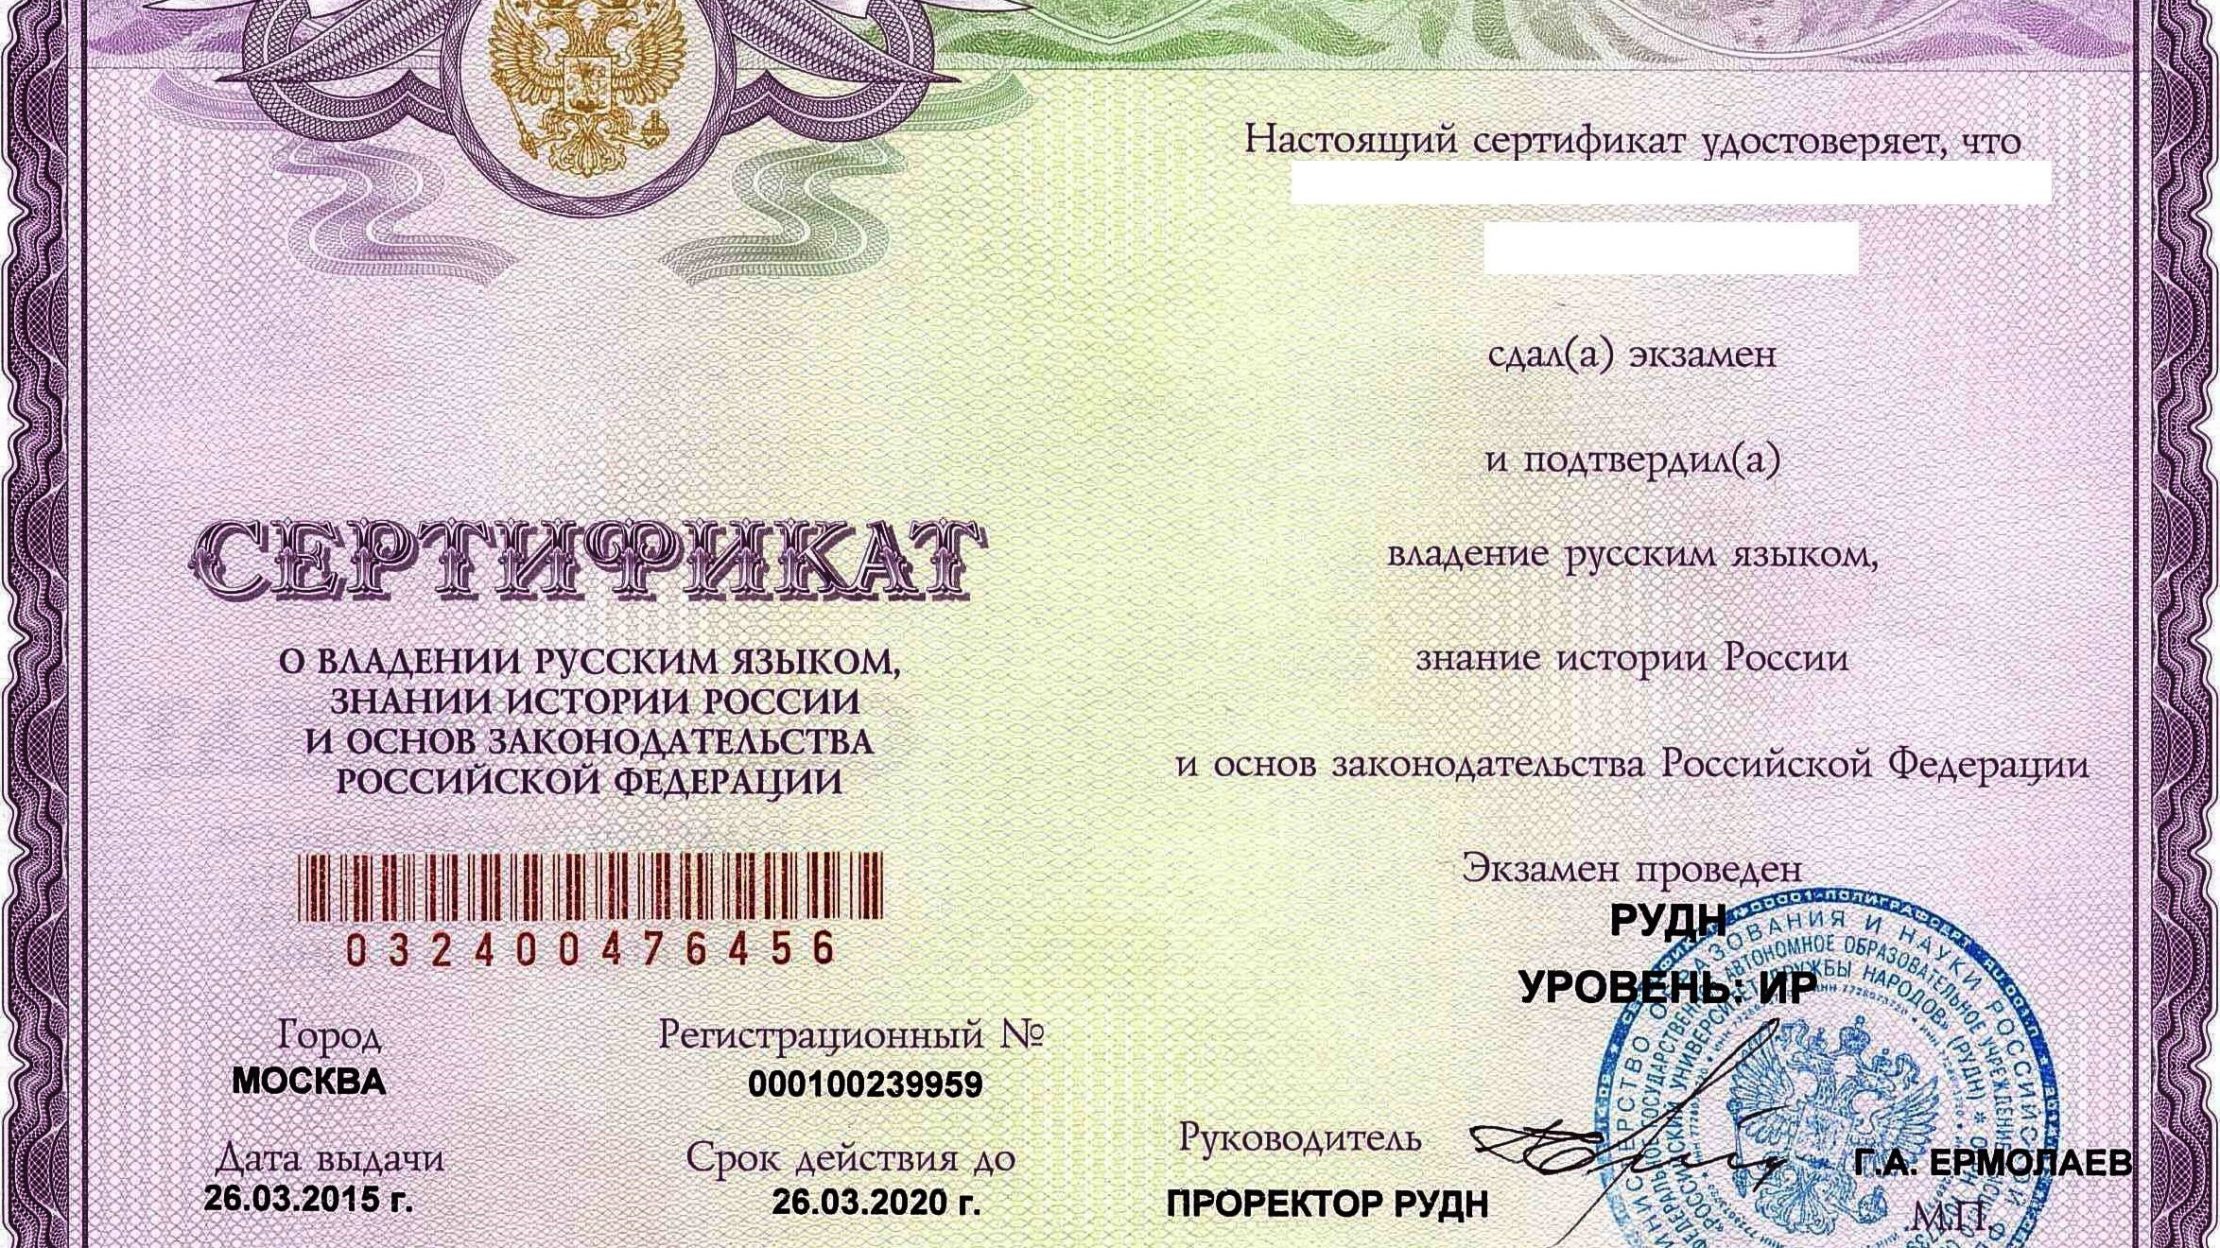 сертификат фотография москва